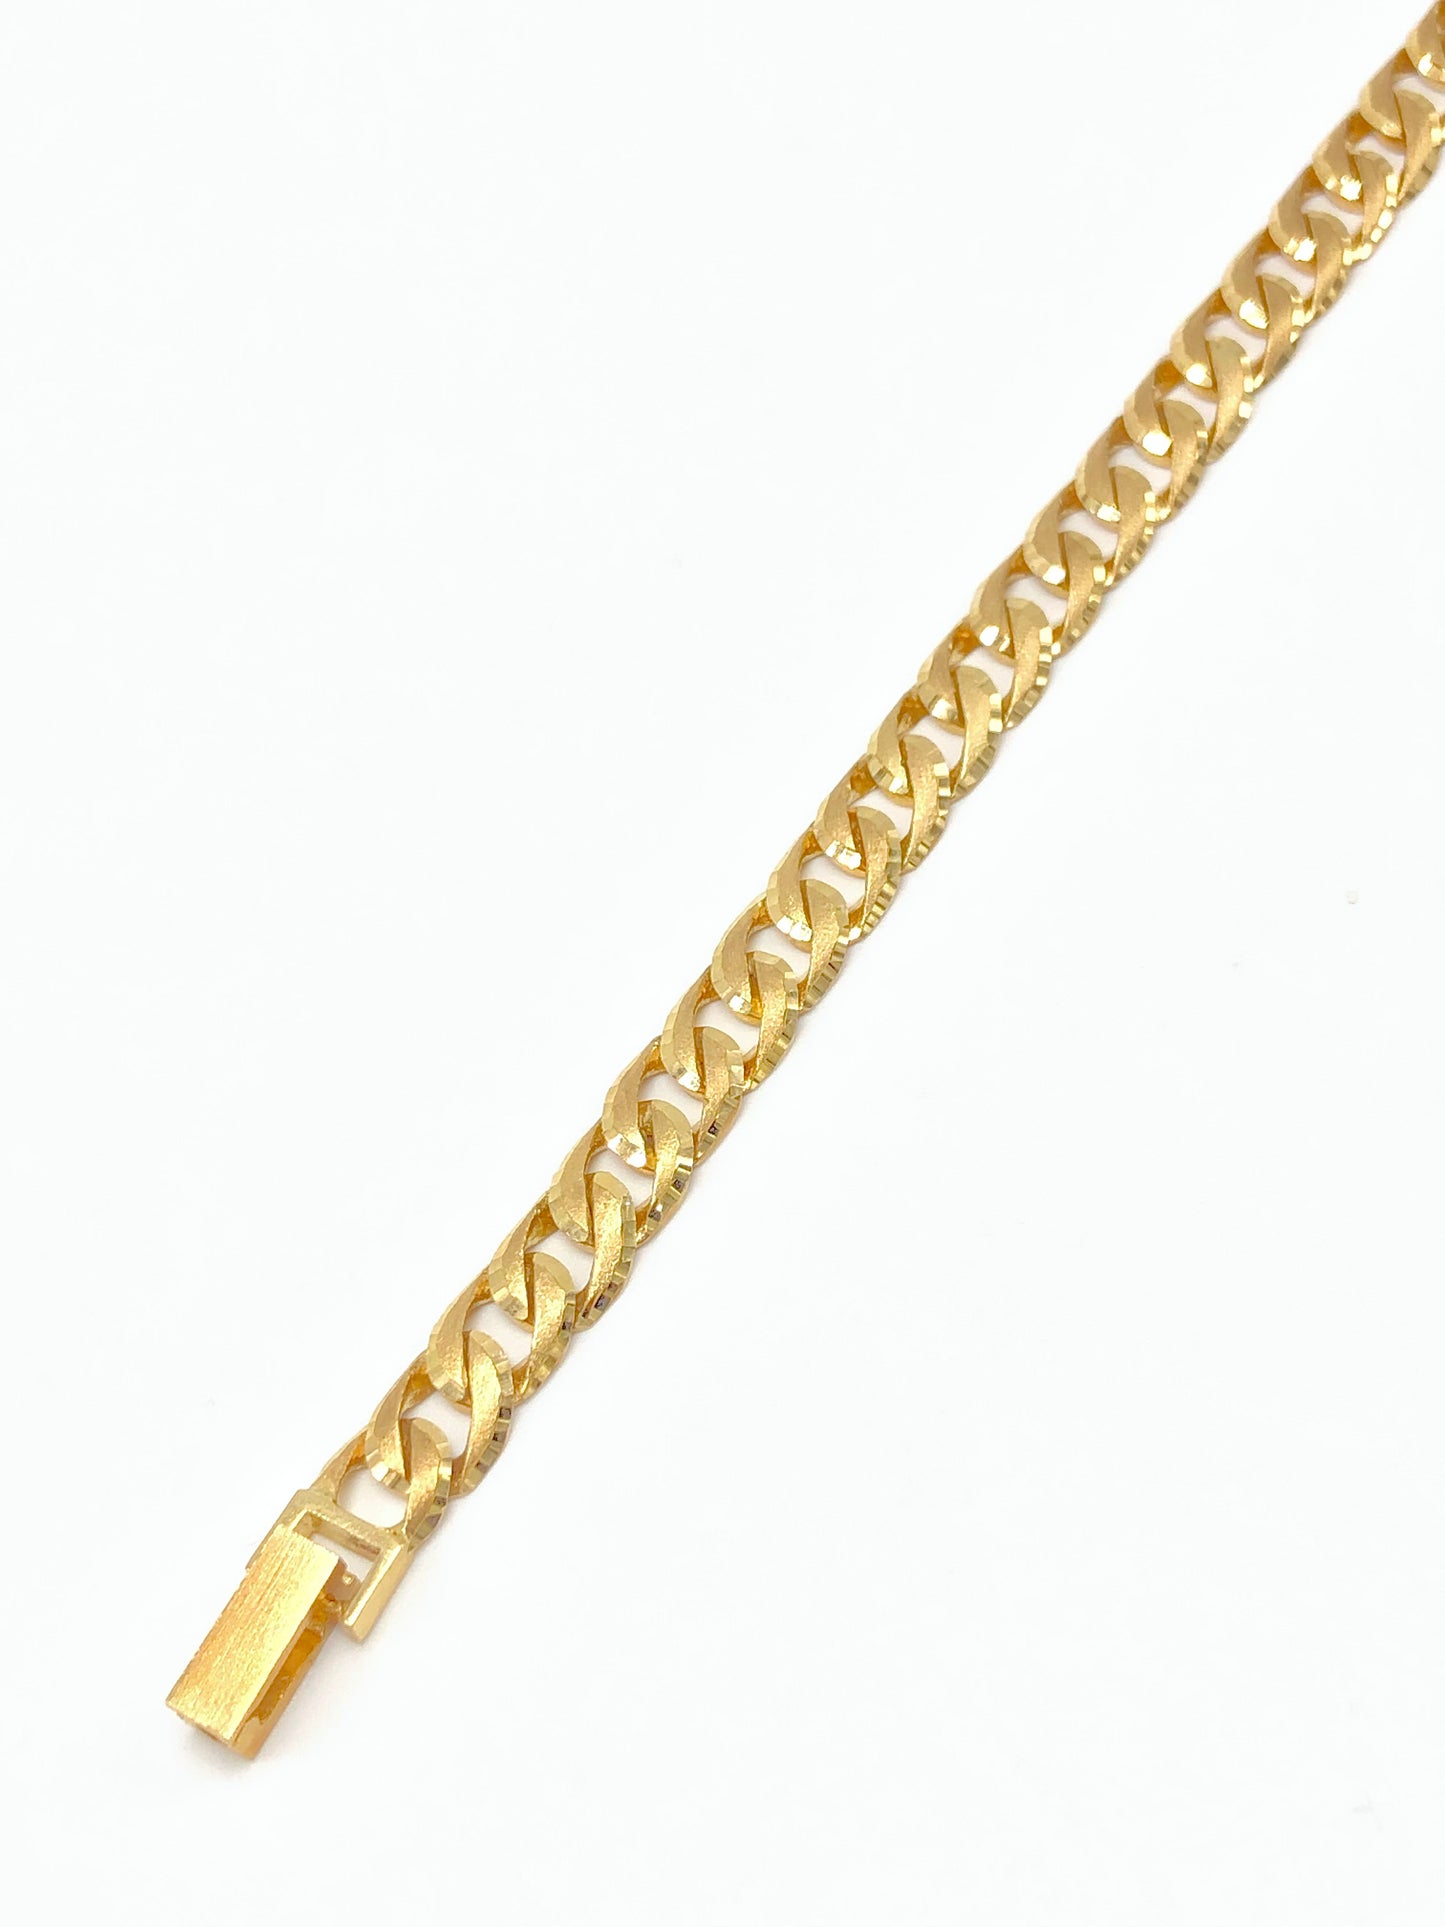 Gold Jewelry - Bracelet 